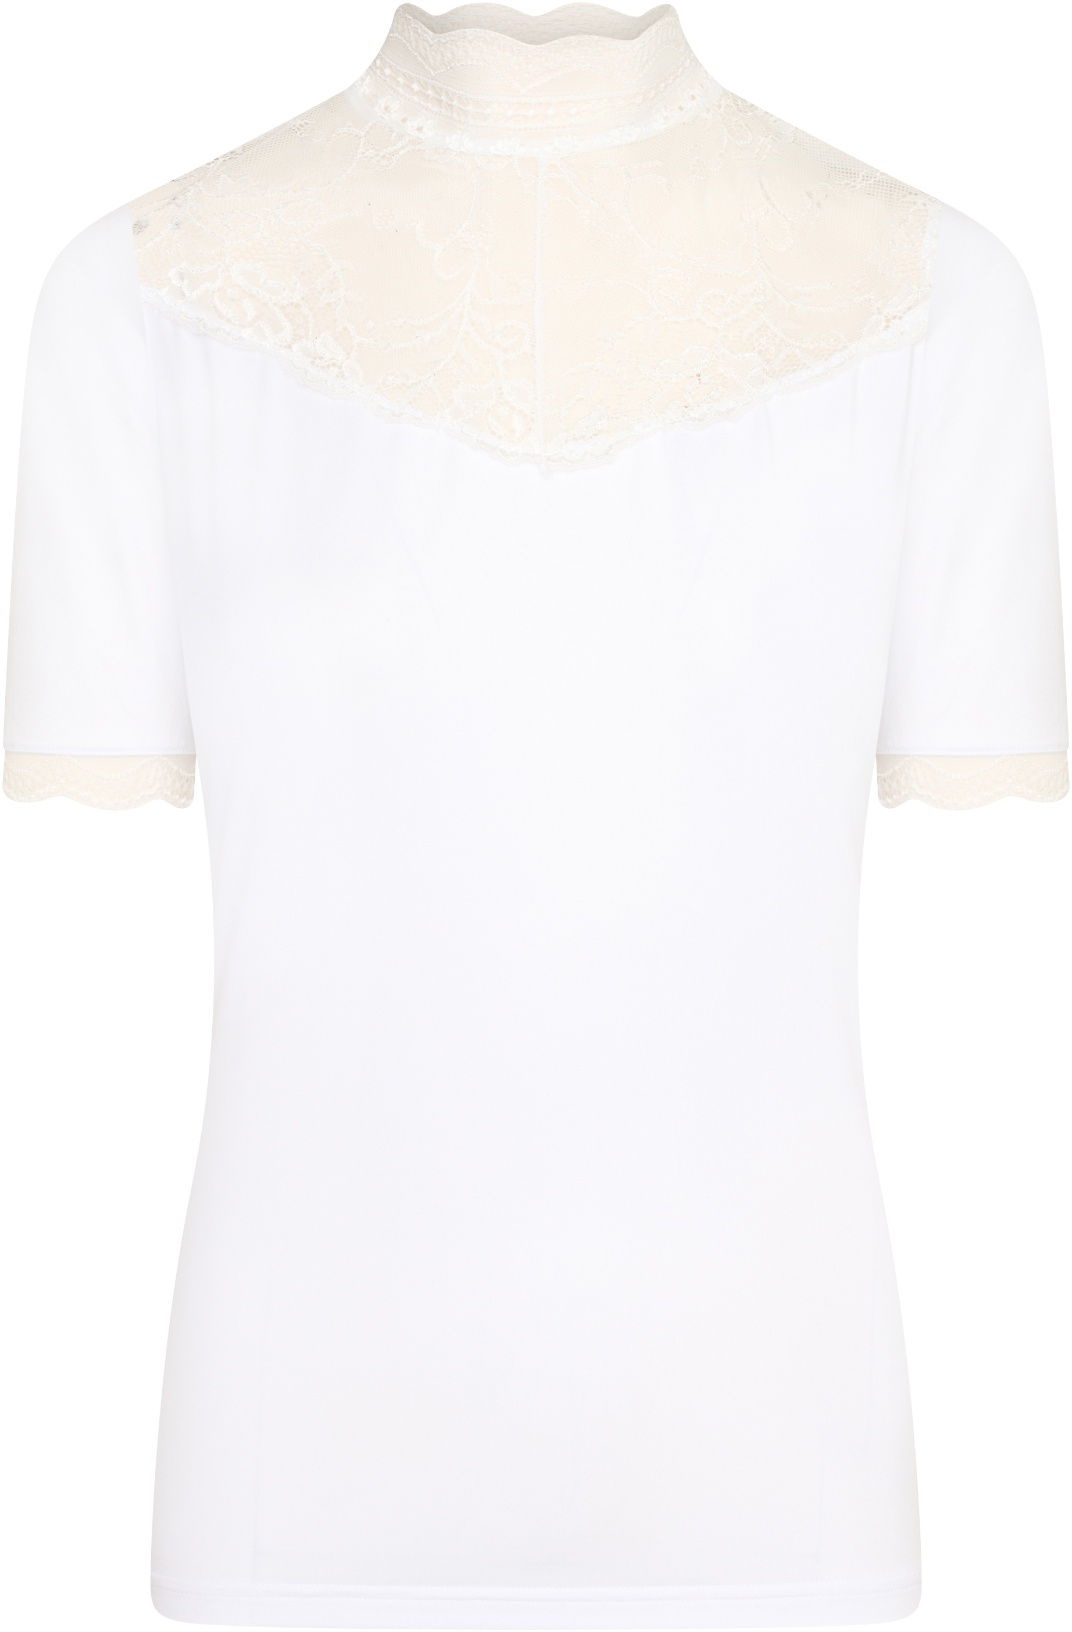 Imperial Riding Turnier-Shirt Dressy White mit viel Spitze und kleinen silbernen Steinchen 2022, Größe: M